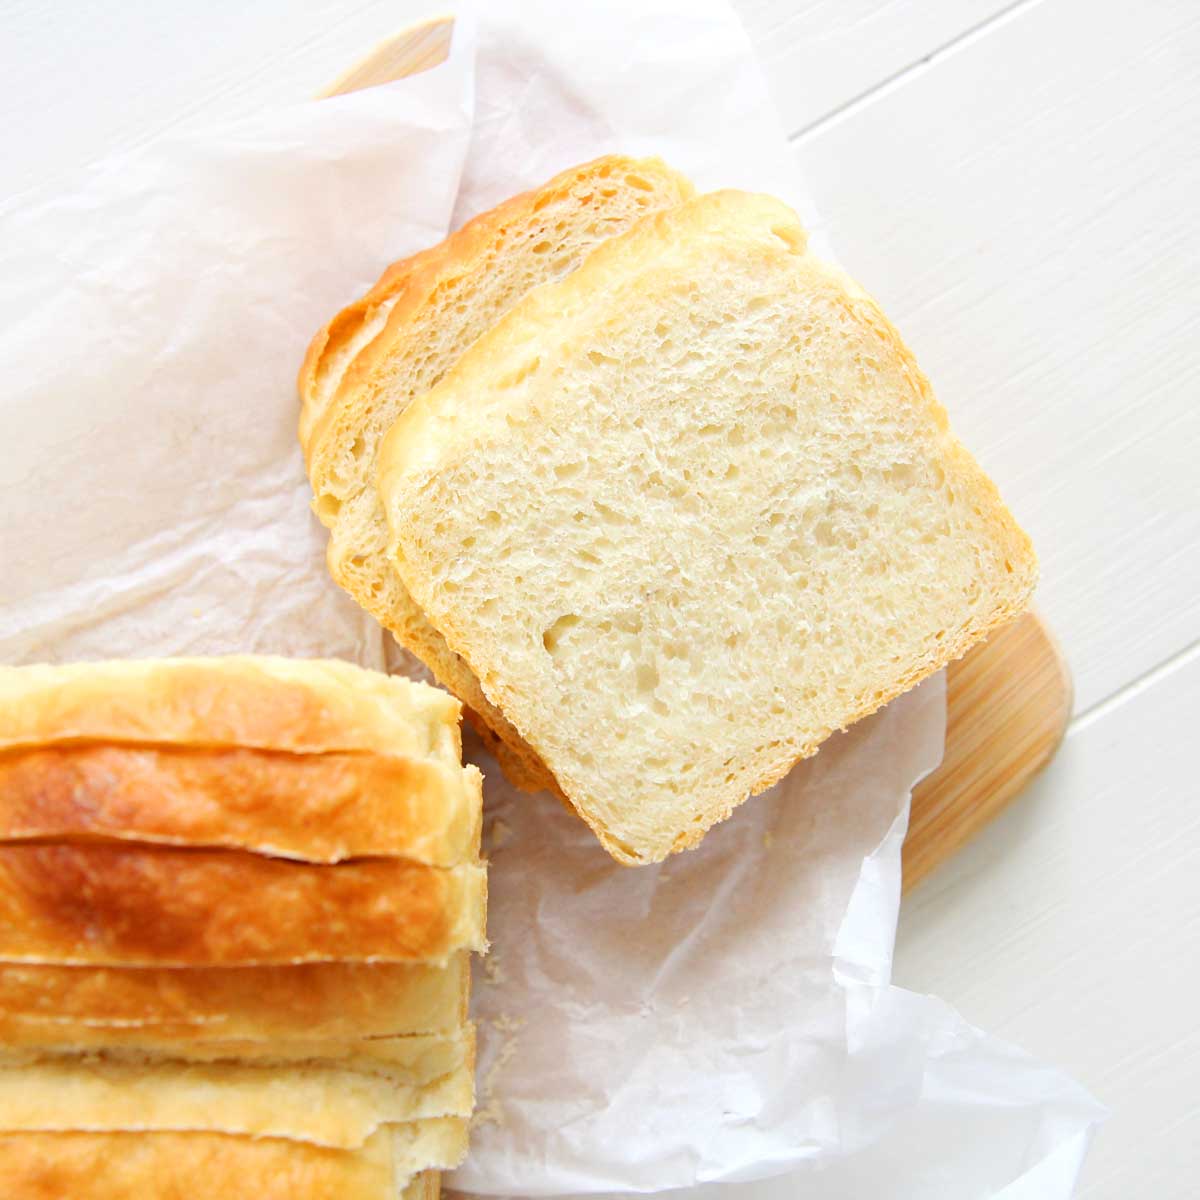 Fat Free Greek Yogurt Yeast Bread (High Protein Sandwich Bread) - swiss roll